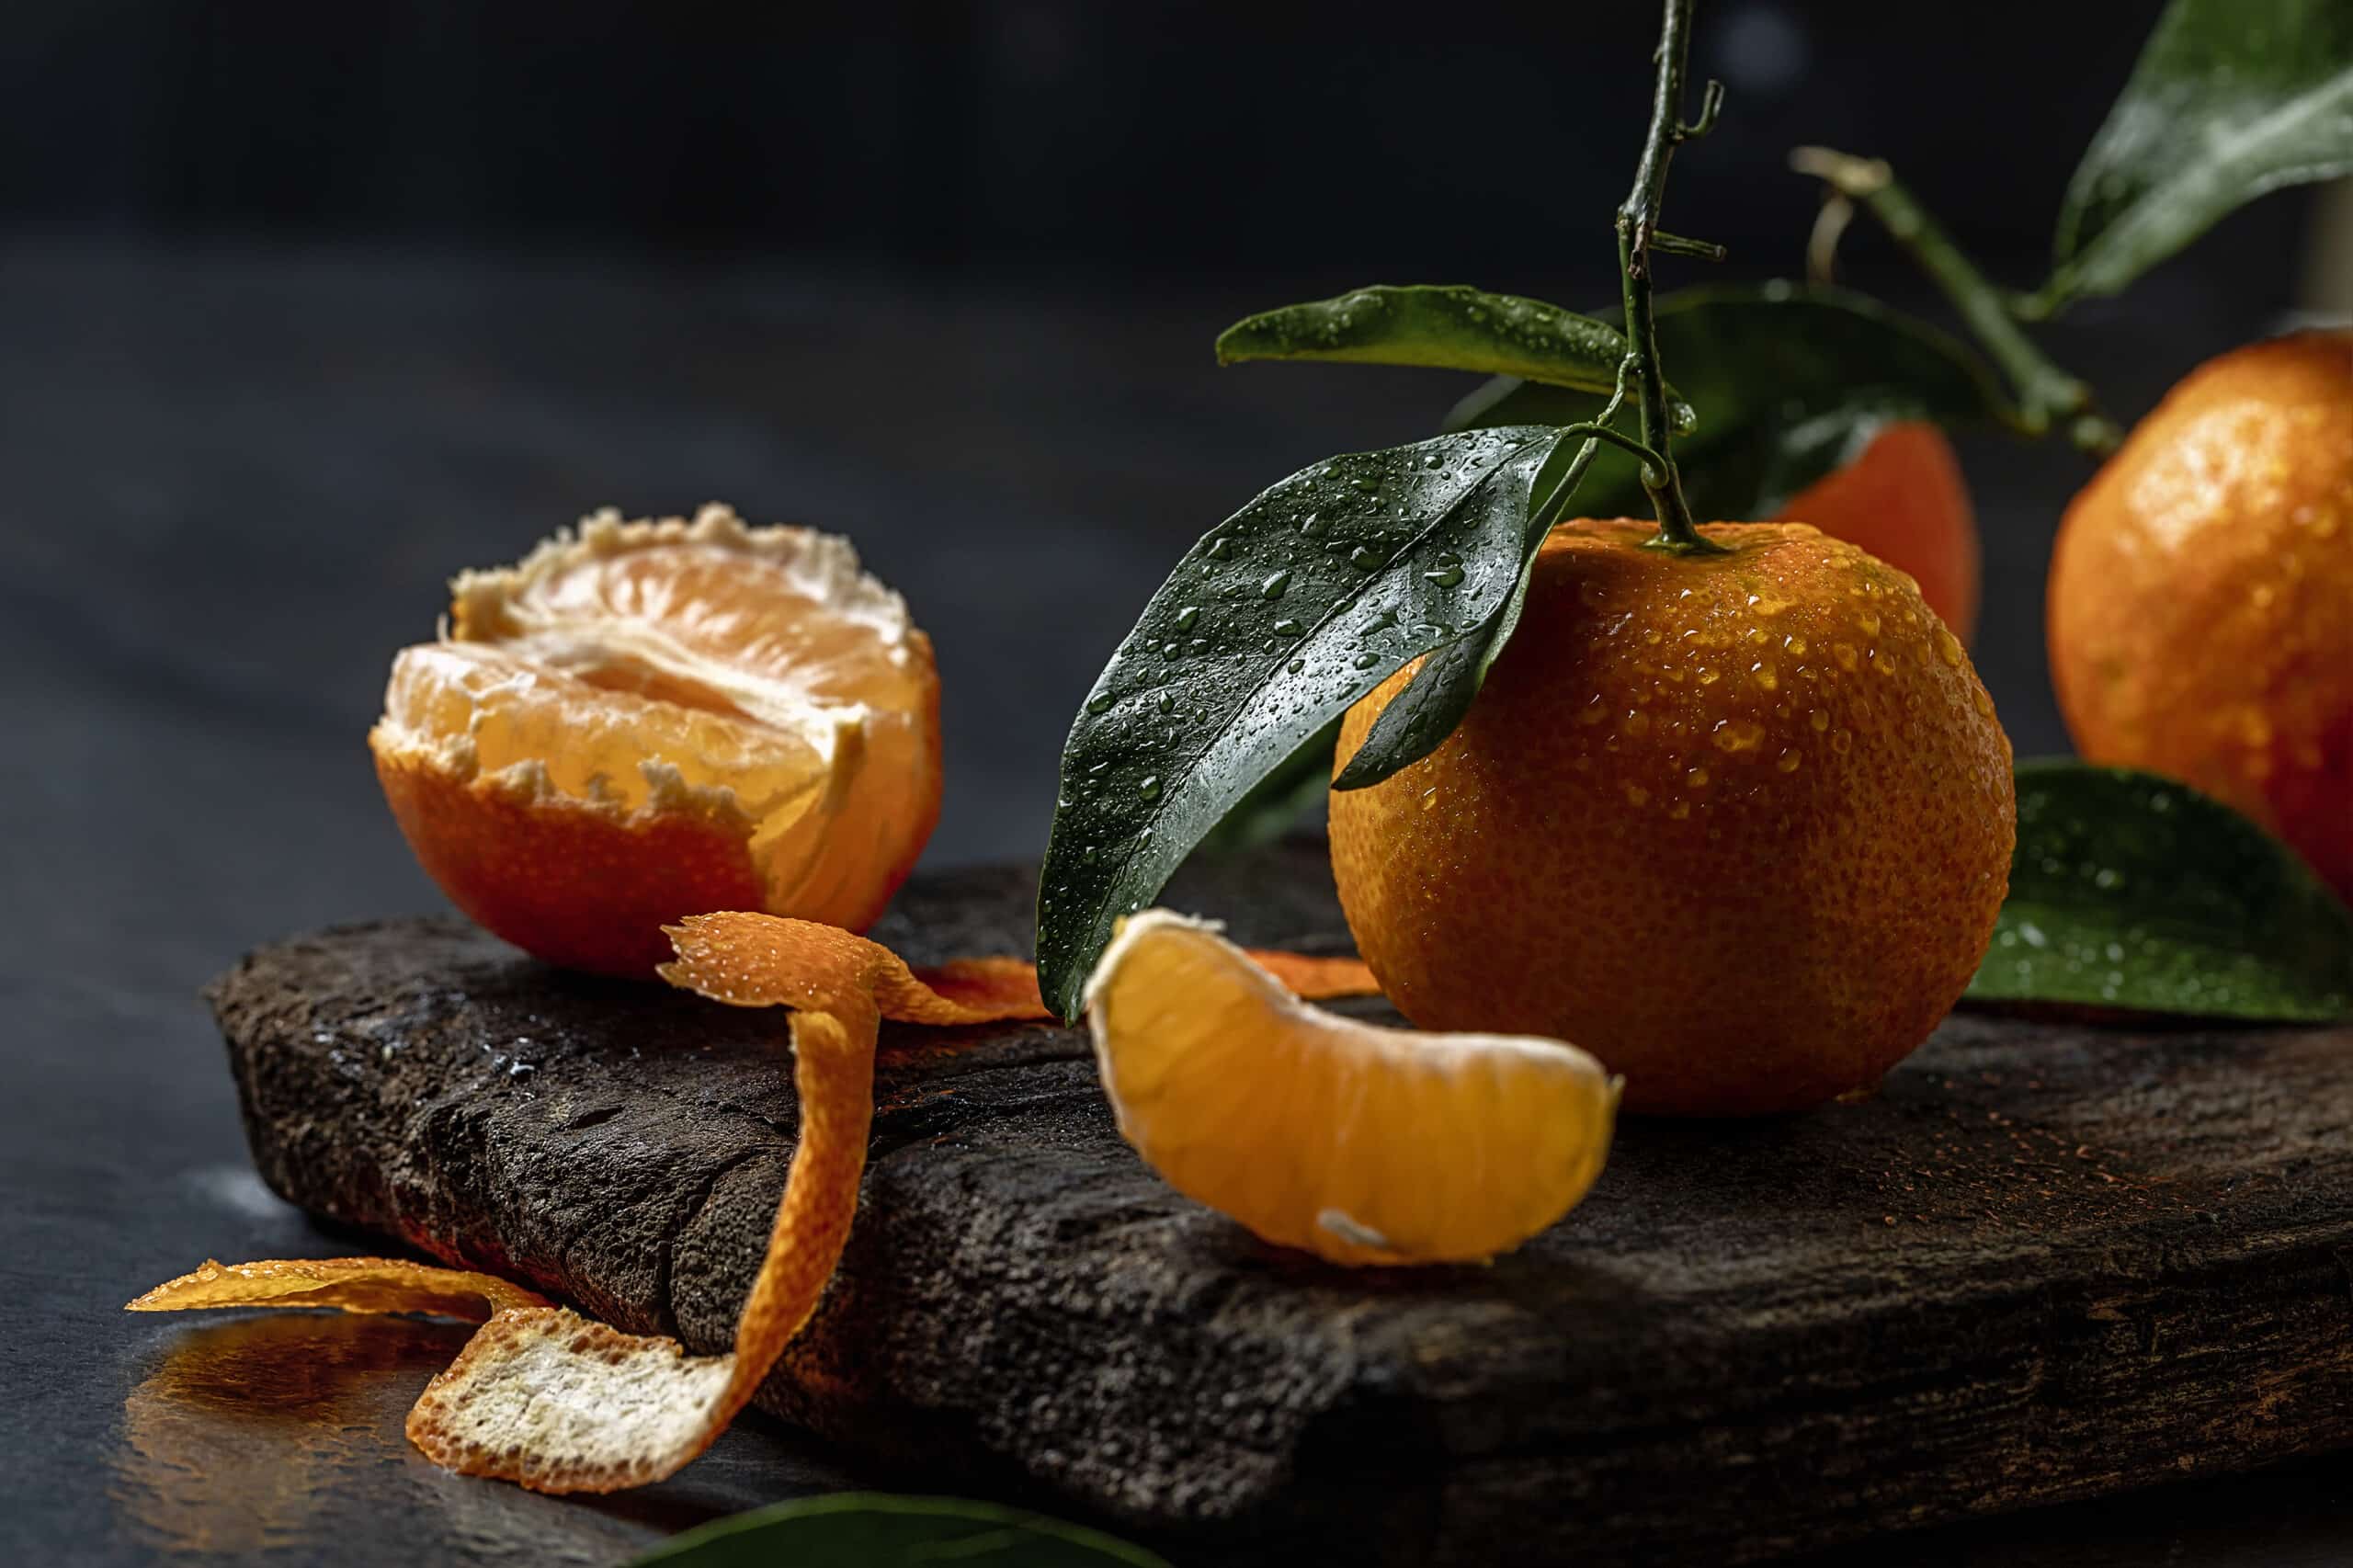 fresh tangerines on dark background